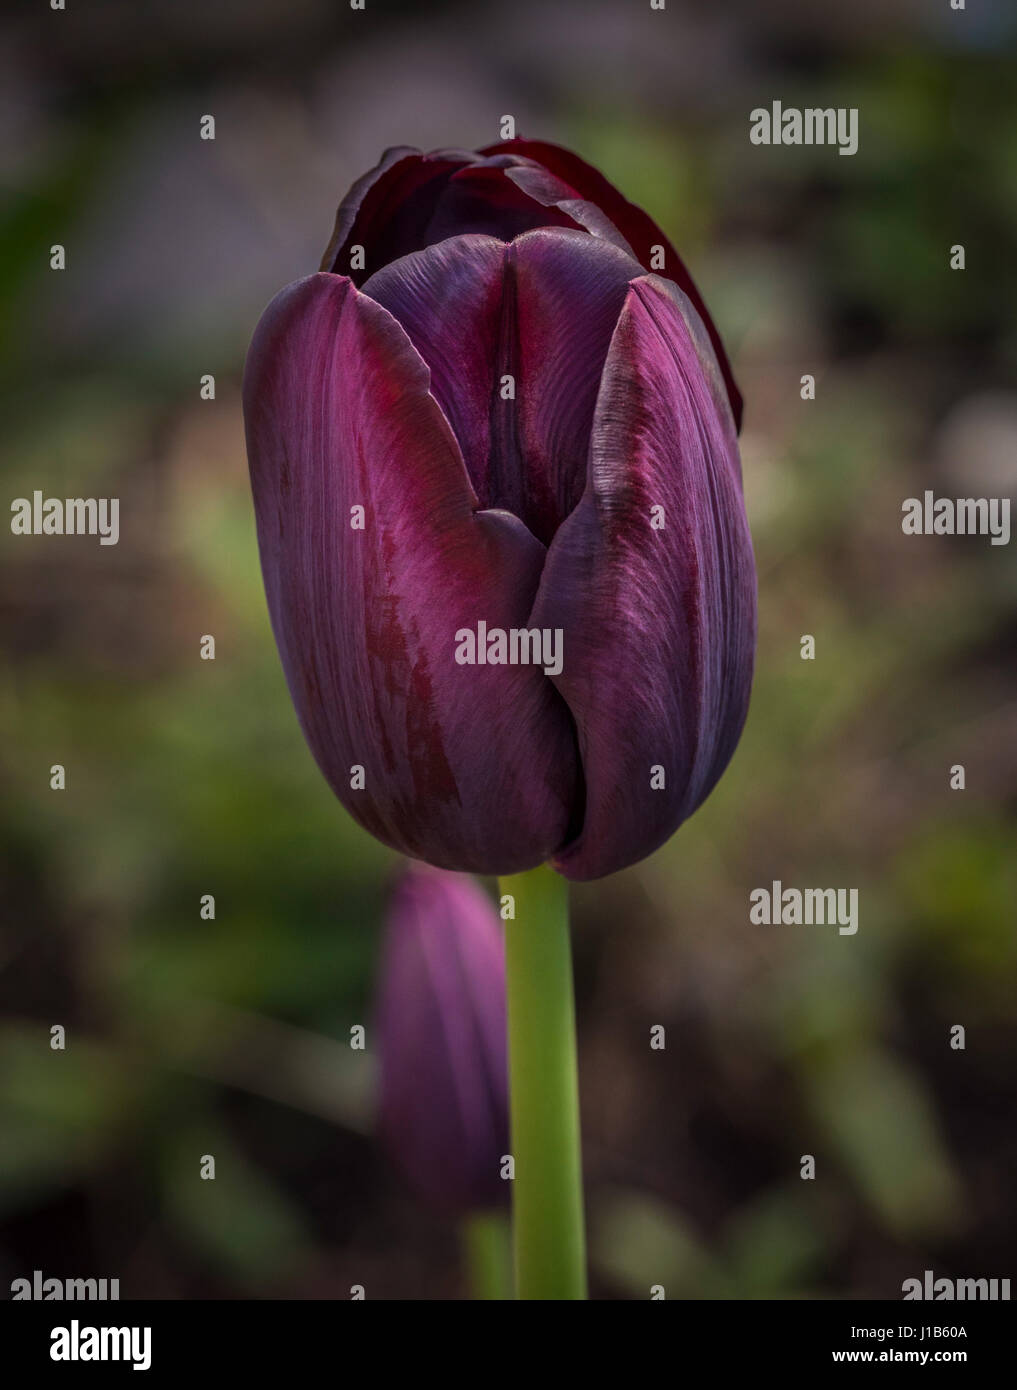 Vue latérale d'une reine de la nuit pourpre tulip culture des fleurs dans un jardin. Banque D'Images